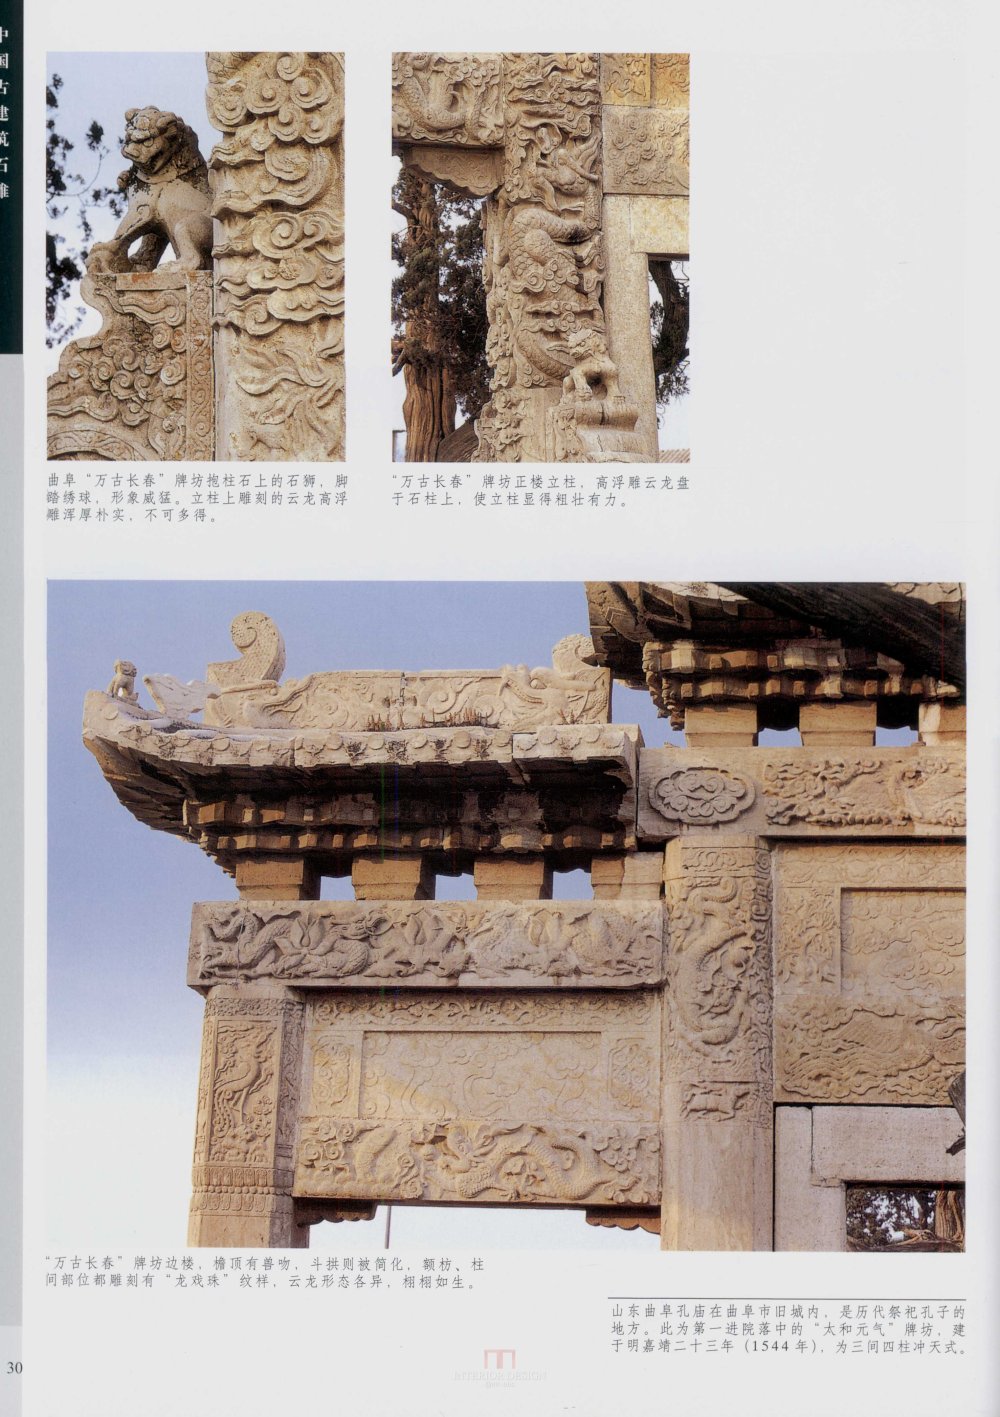 中国古代建筑 石雕_kobe 0038.jpg